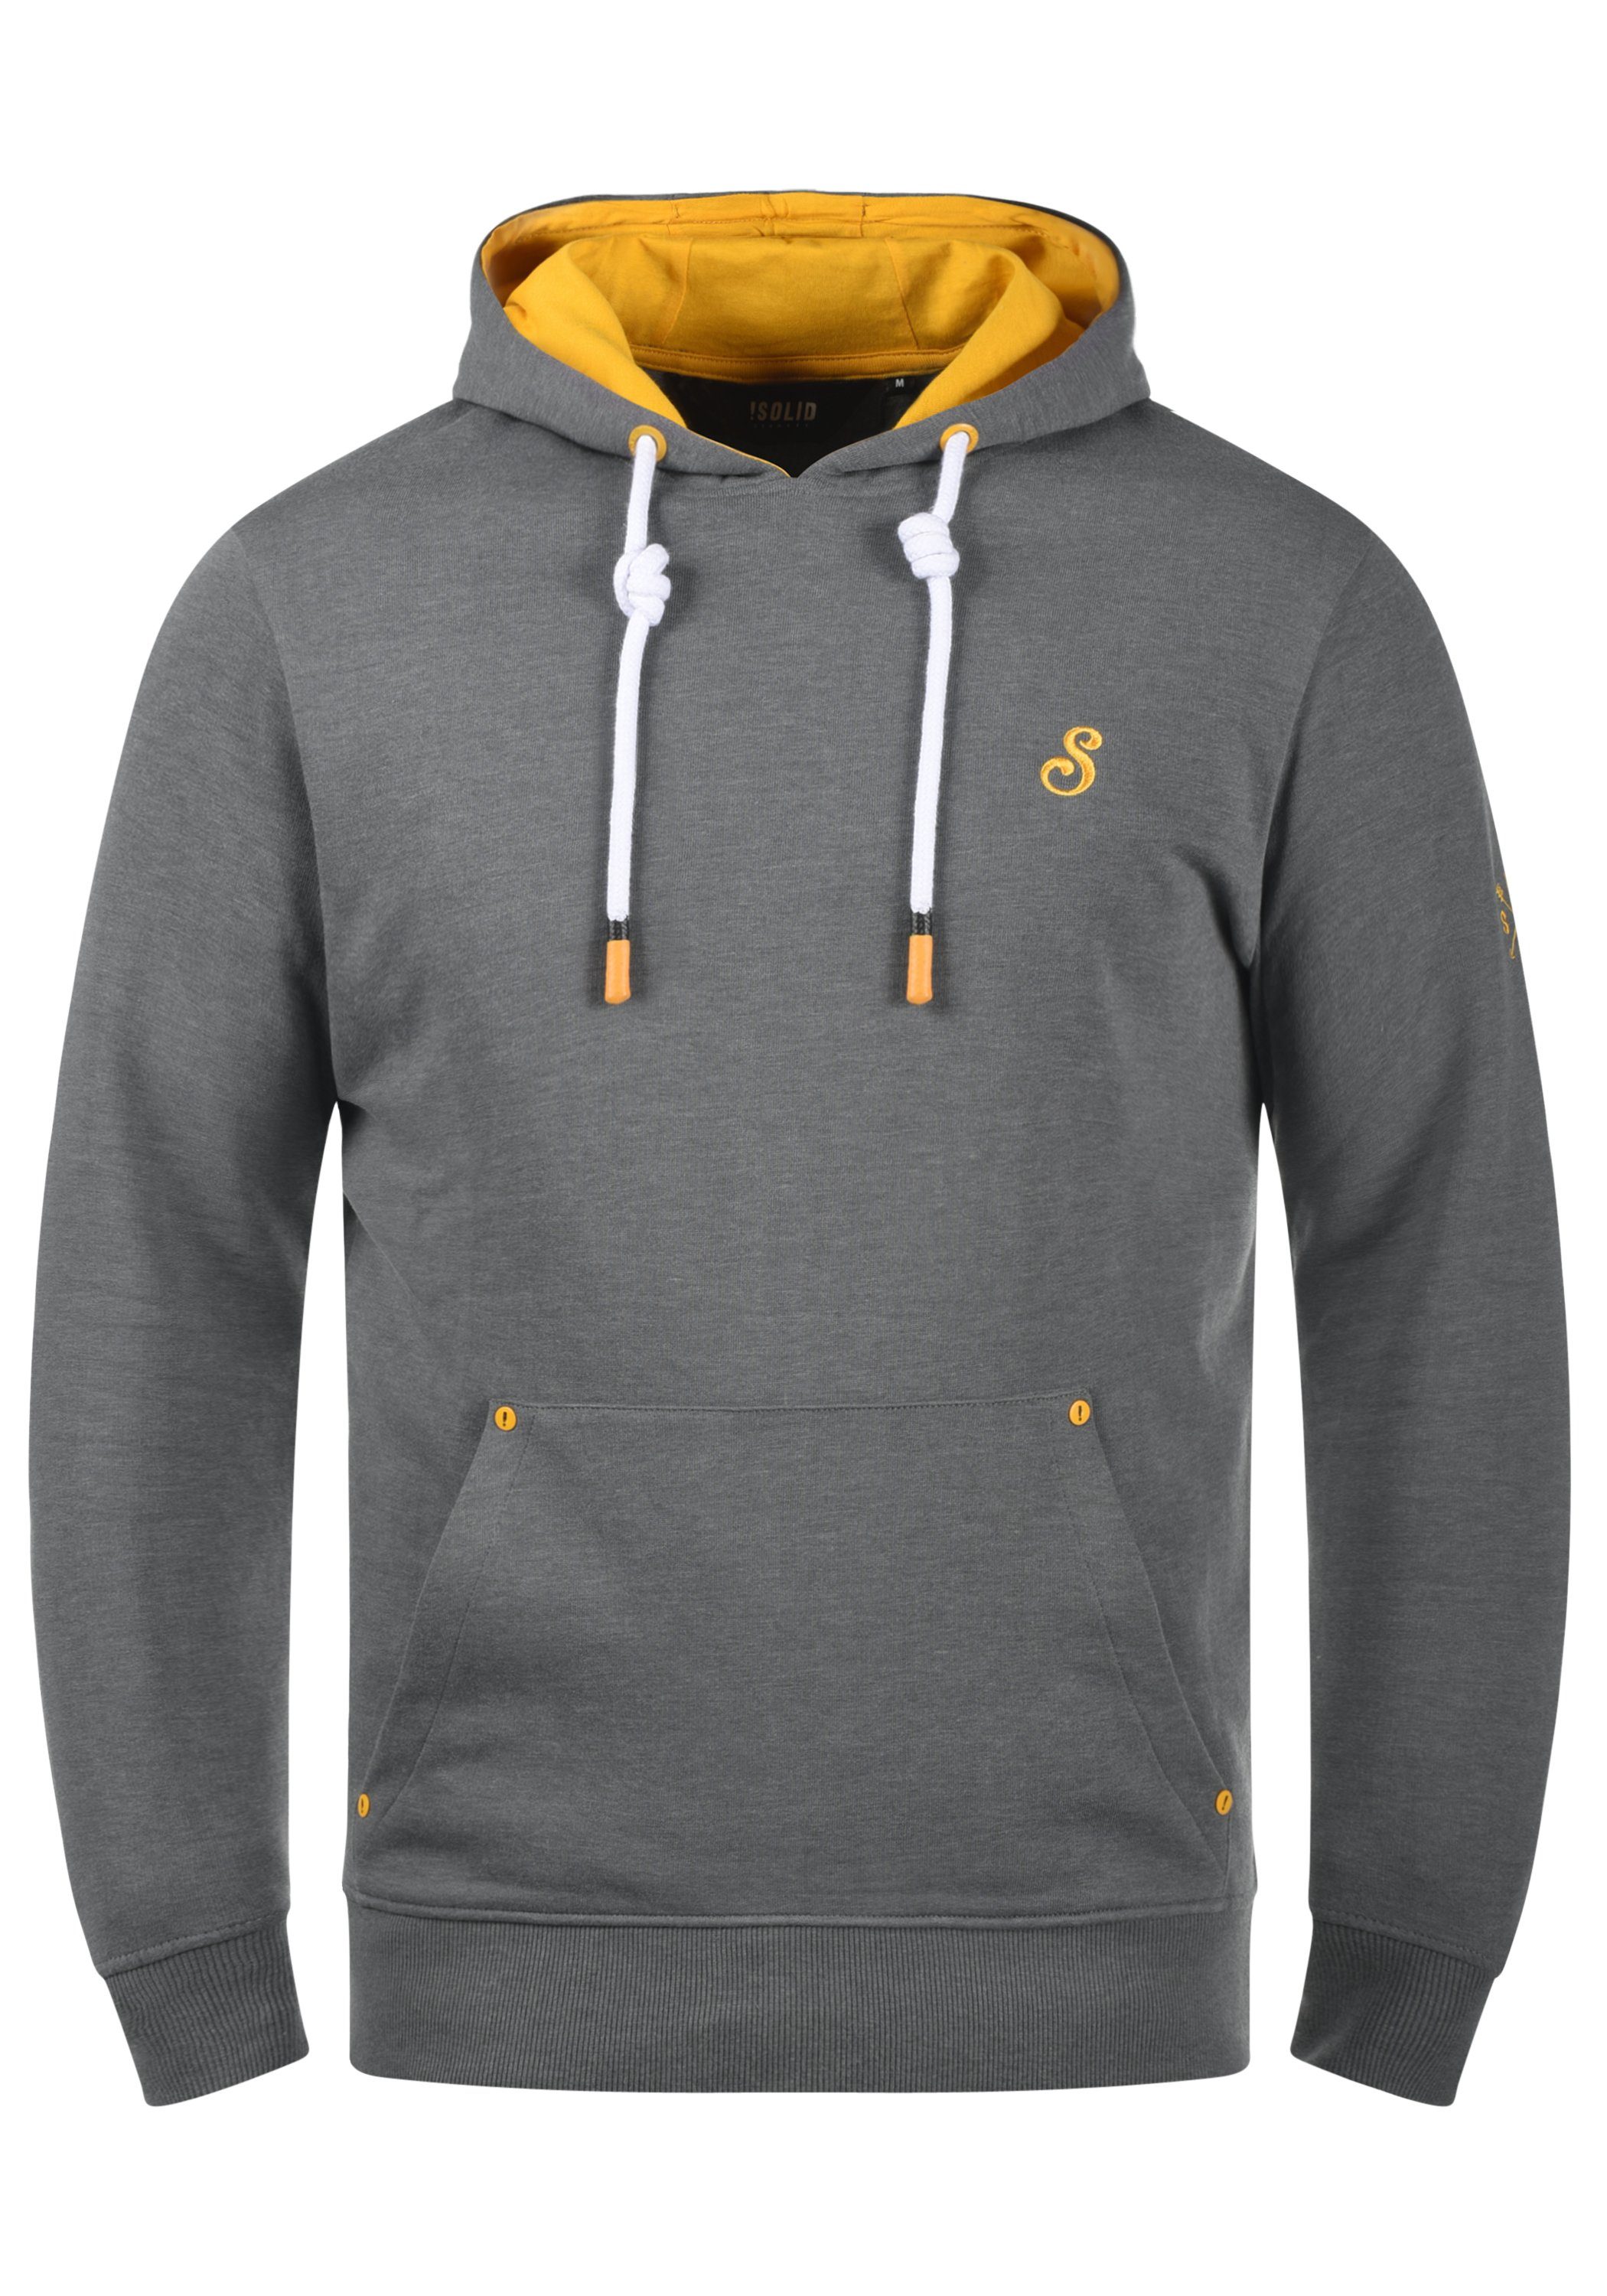 kontrastreichen (1840051) !Solid Melange mit Details farblichen Kapuzensweatshirt Hoodie SDKenan Grey